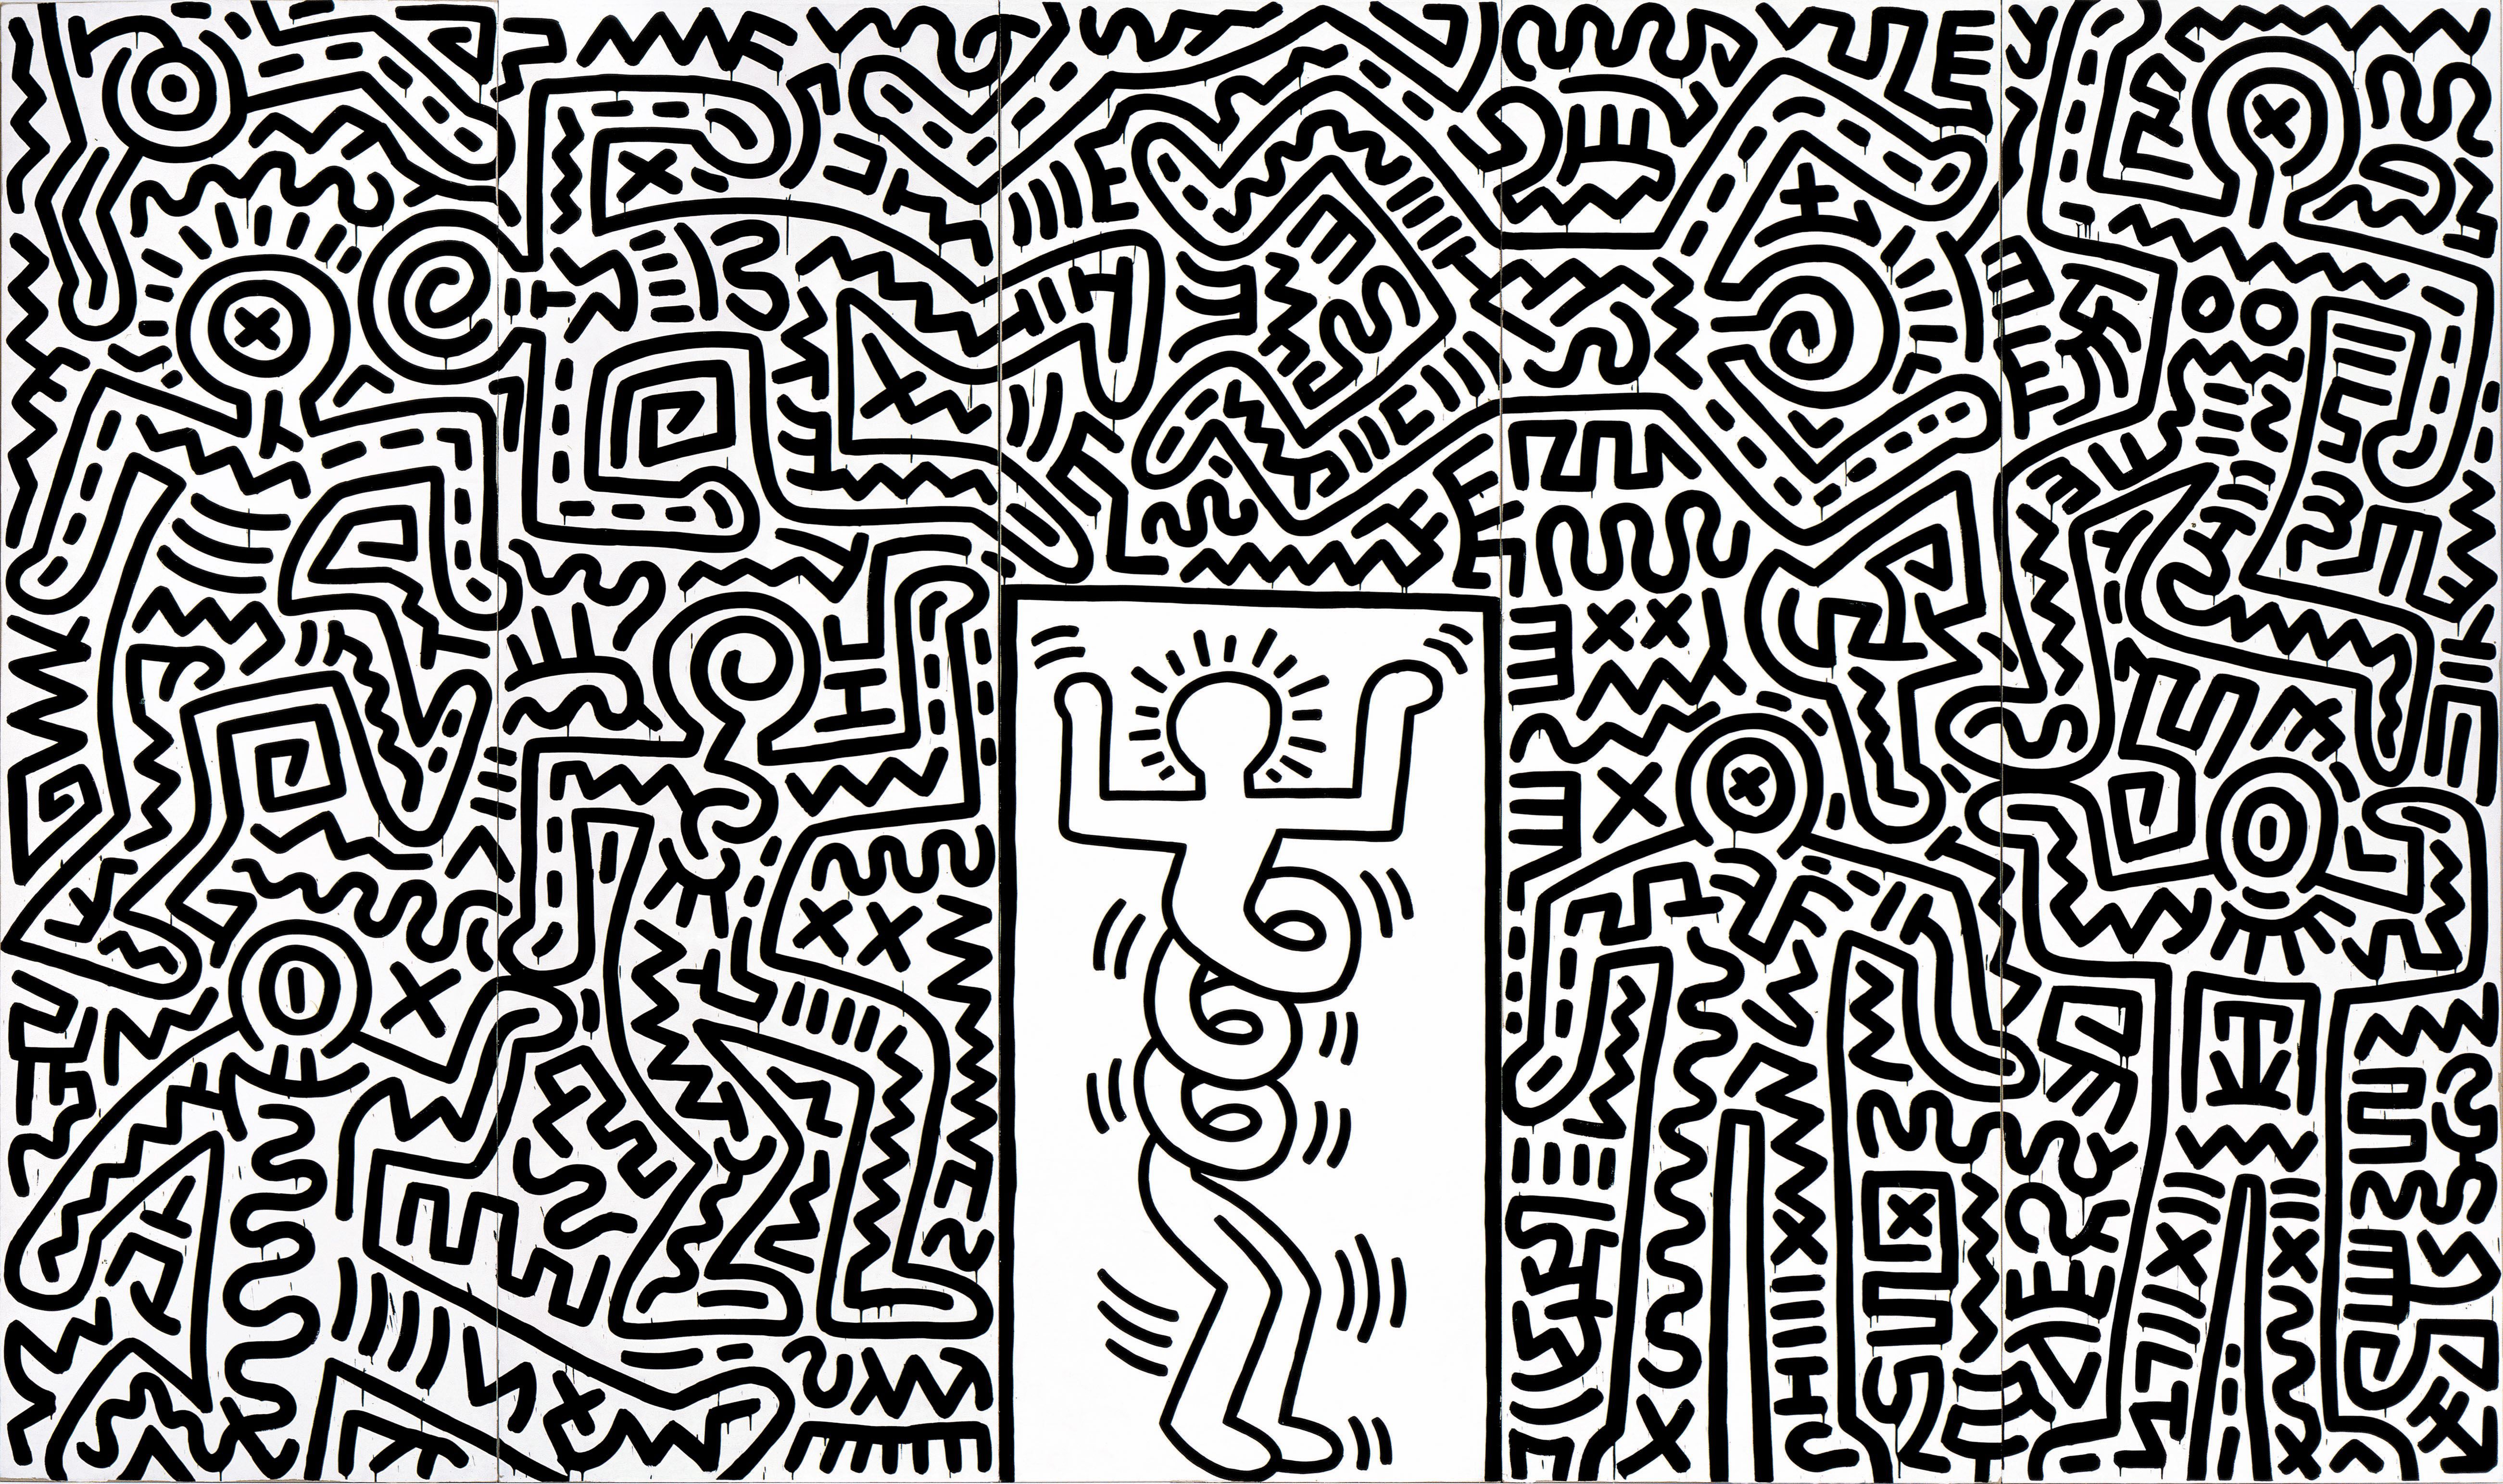 『スウィート・サタデー・ナイト』のための舞台セット 1985年 中村キース・ヘリング美術館蔵 Keith Haring Artwork